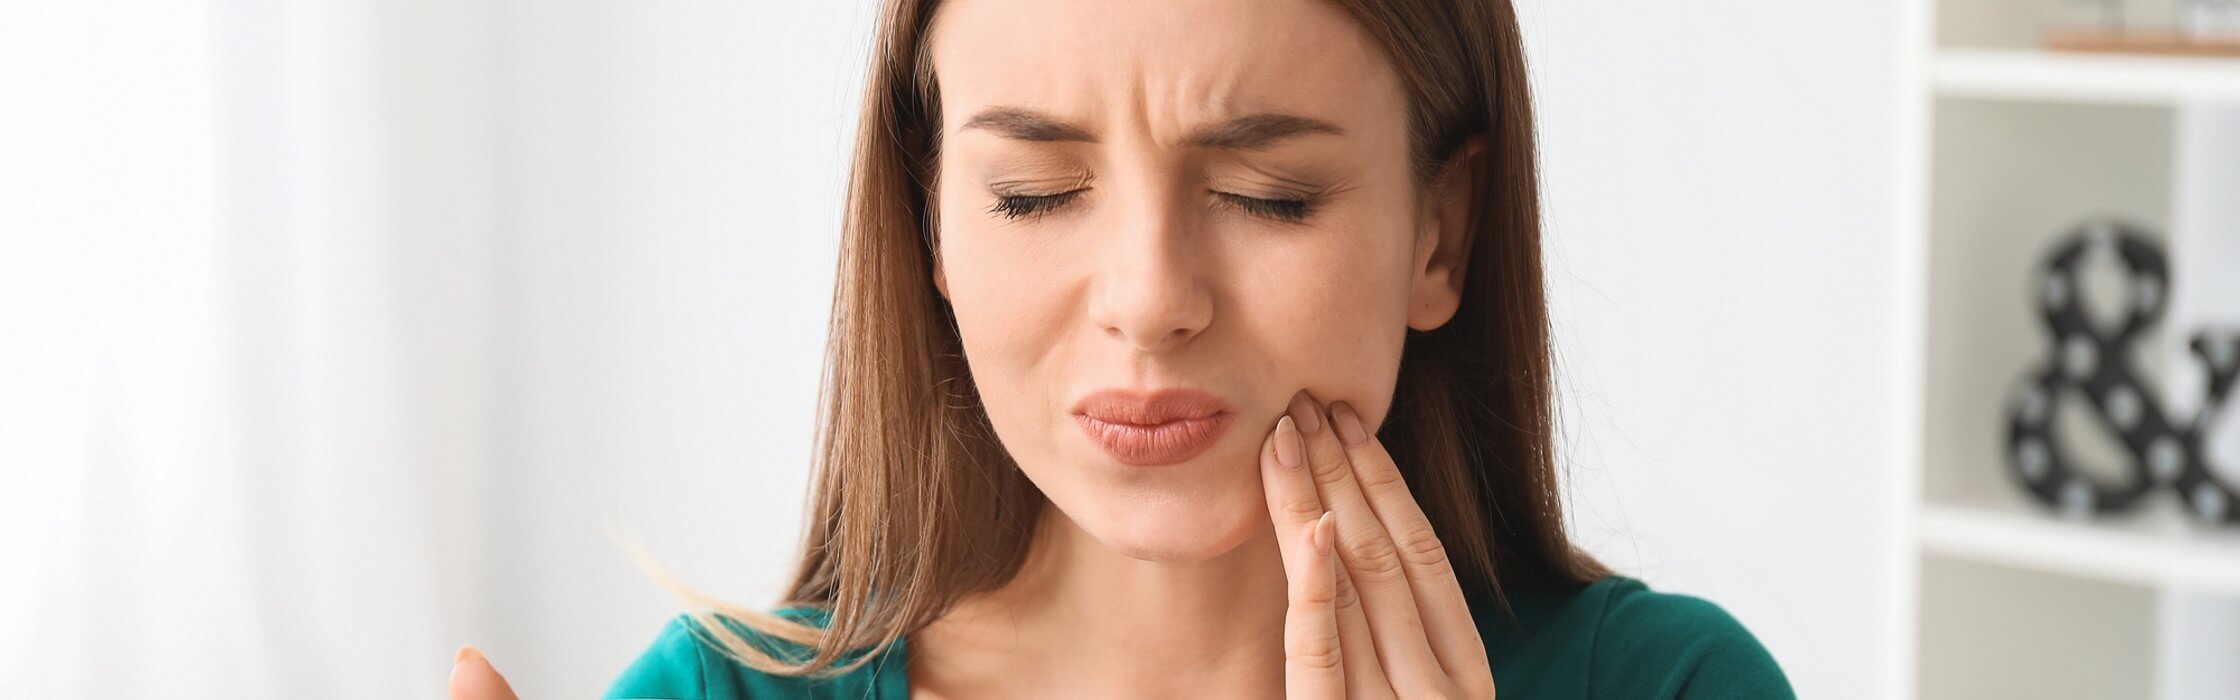 Empfindliche Zähne: Was sind mögliche Ursachen?